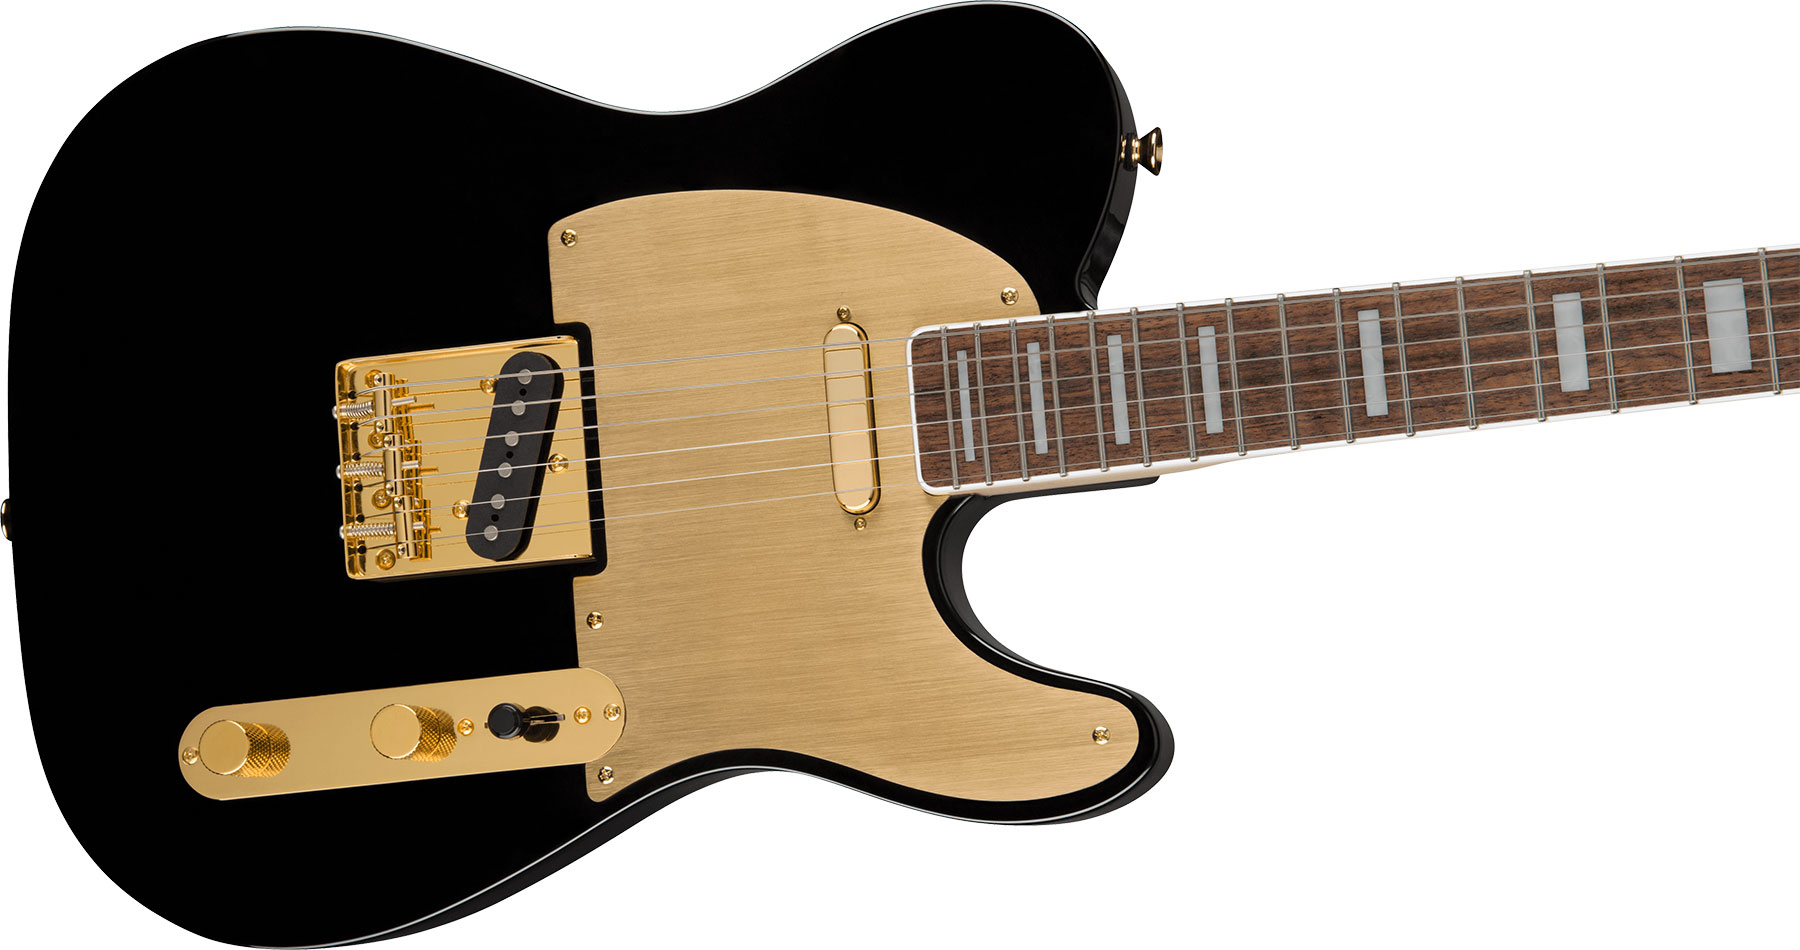 Squier Tele 40th Anniversary Gold Edition Lau - Black - Guitarra eléctrica con forma de tel - Variation 2